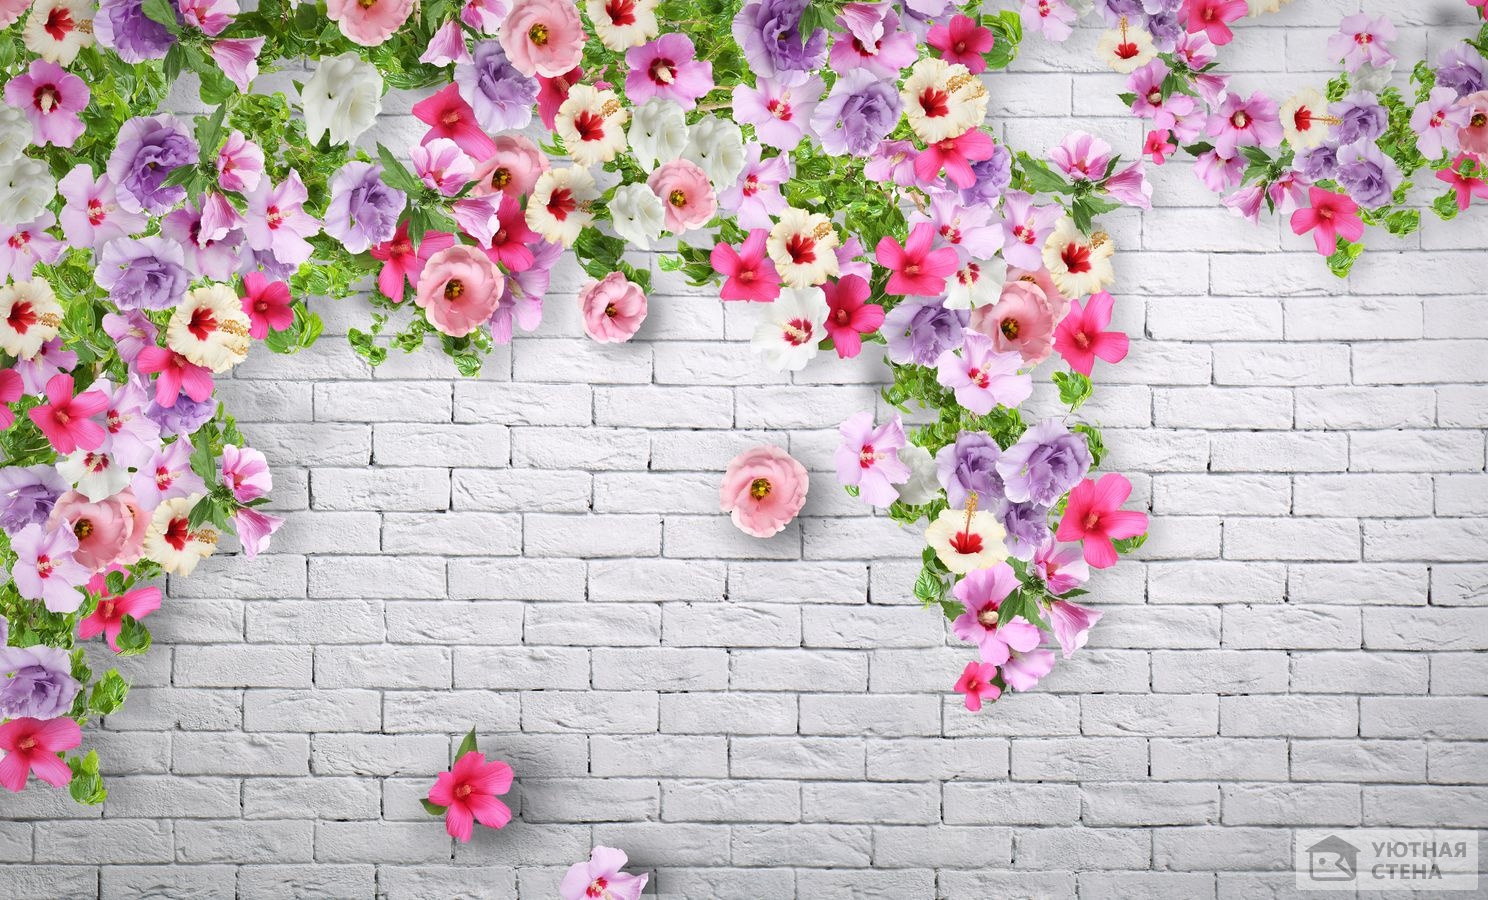 Вьющиеся цветы на кирпичной стене